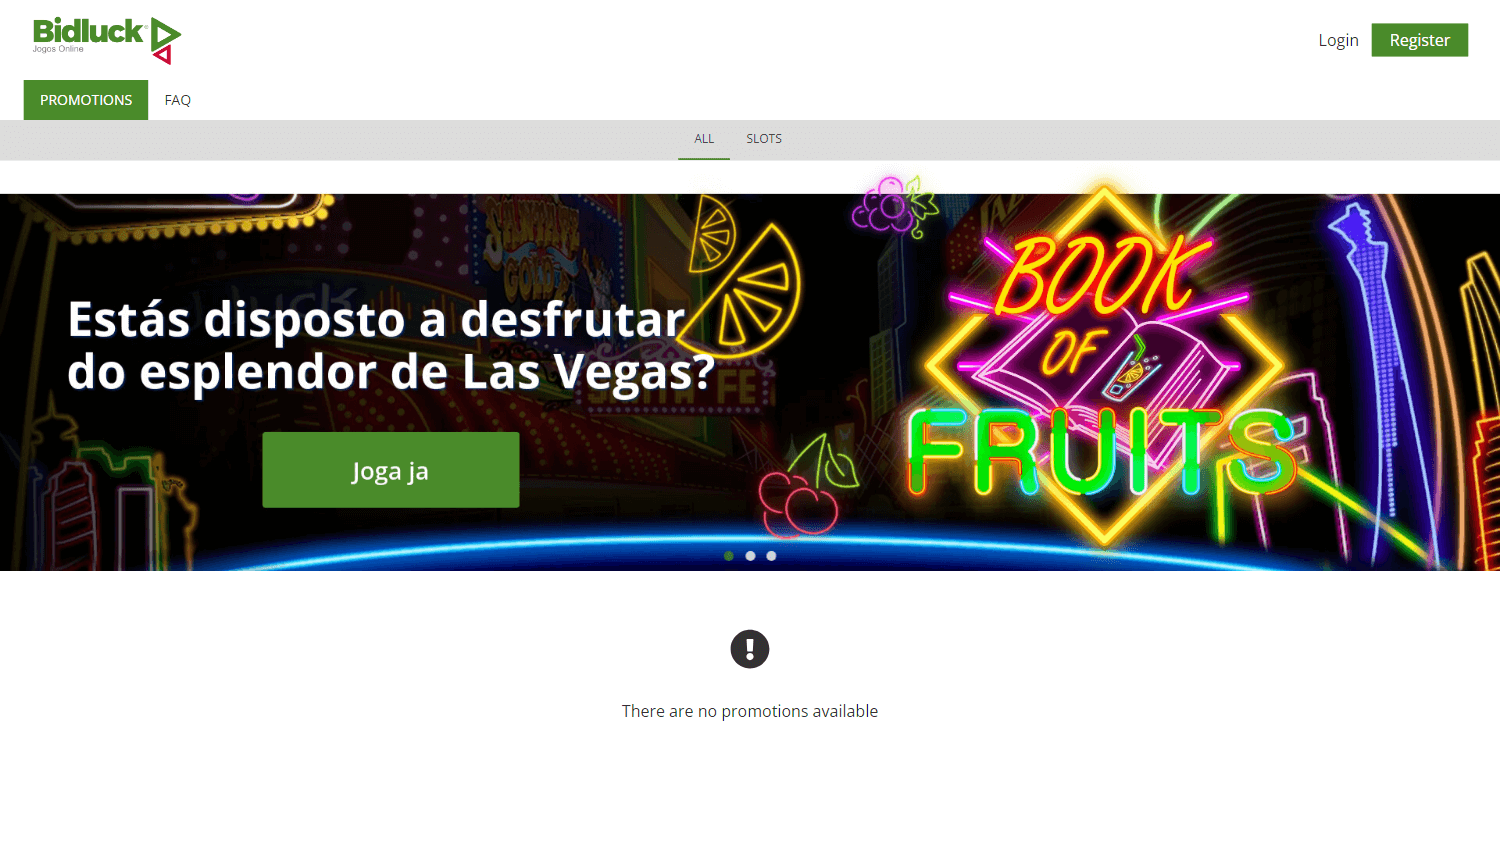 bidluck_casino_promotions_desktop